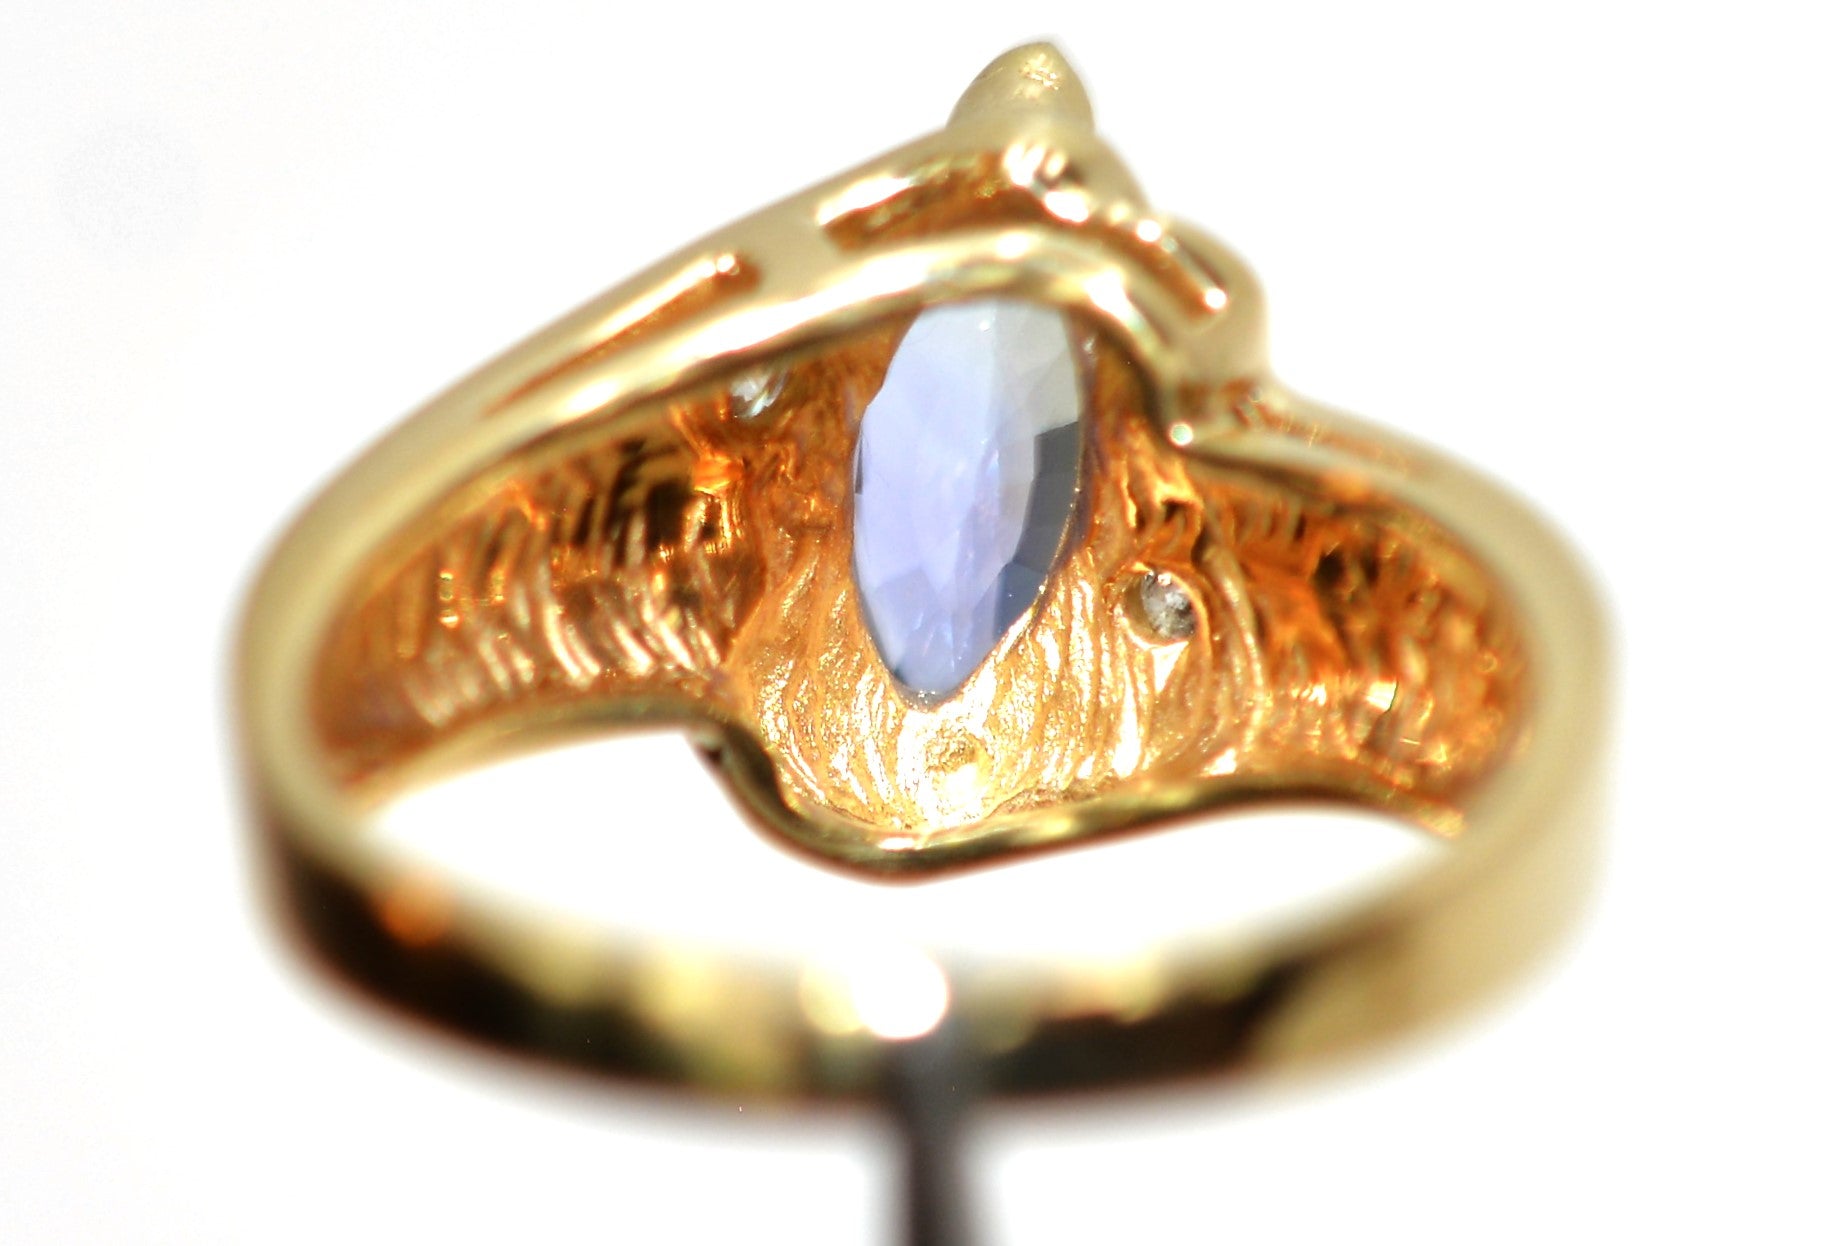 Natural Tanzanite & Diamond Ring 10K Solid Gold 1.34tcw Marquise Ring Gemstone Ring Birthstone Ring Statement Ring Cocktail Ring Estate Ring